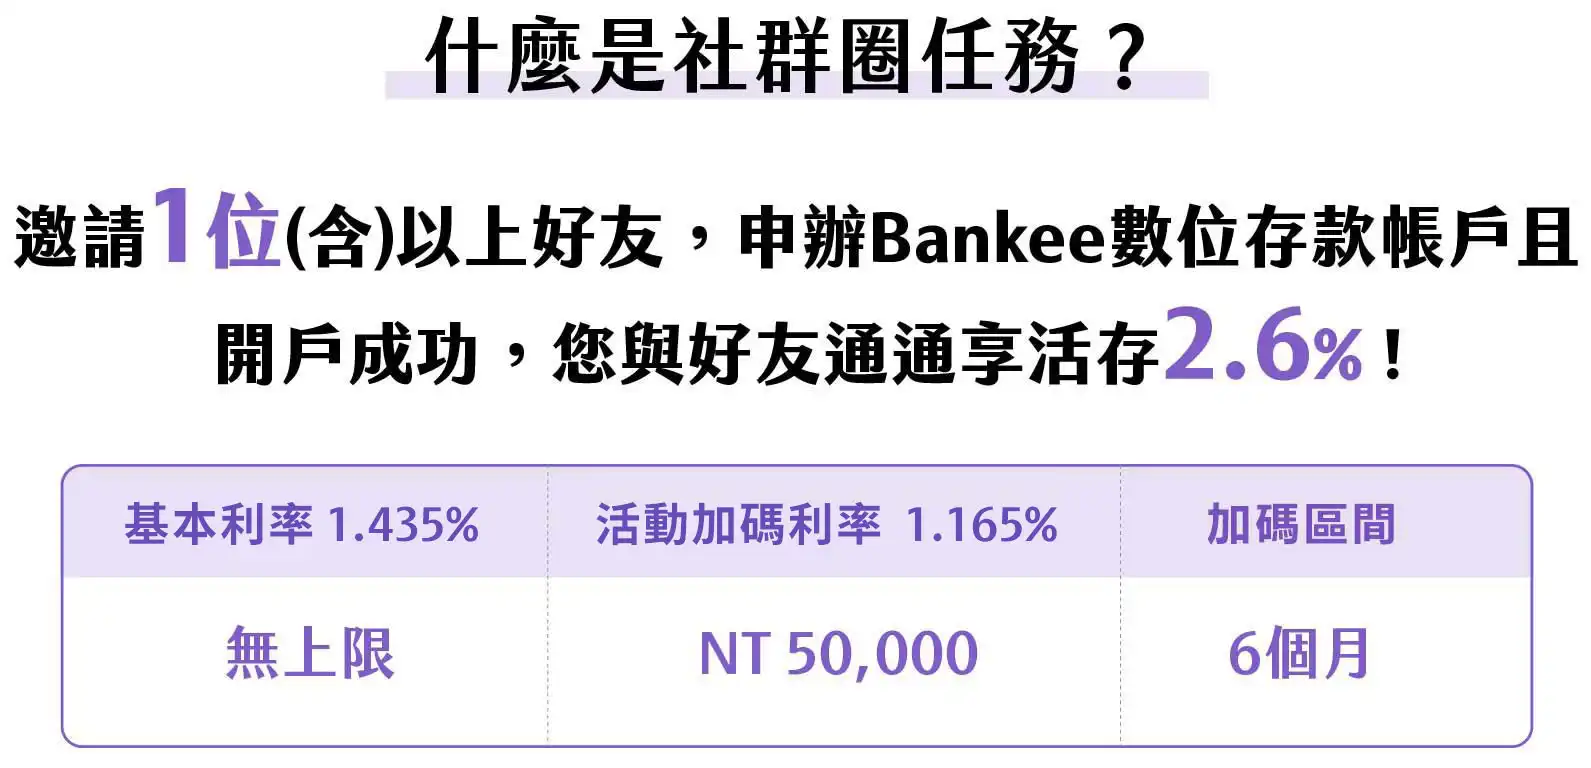 Bankee社群圈